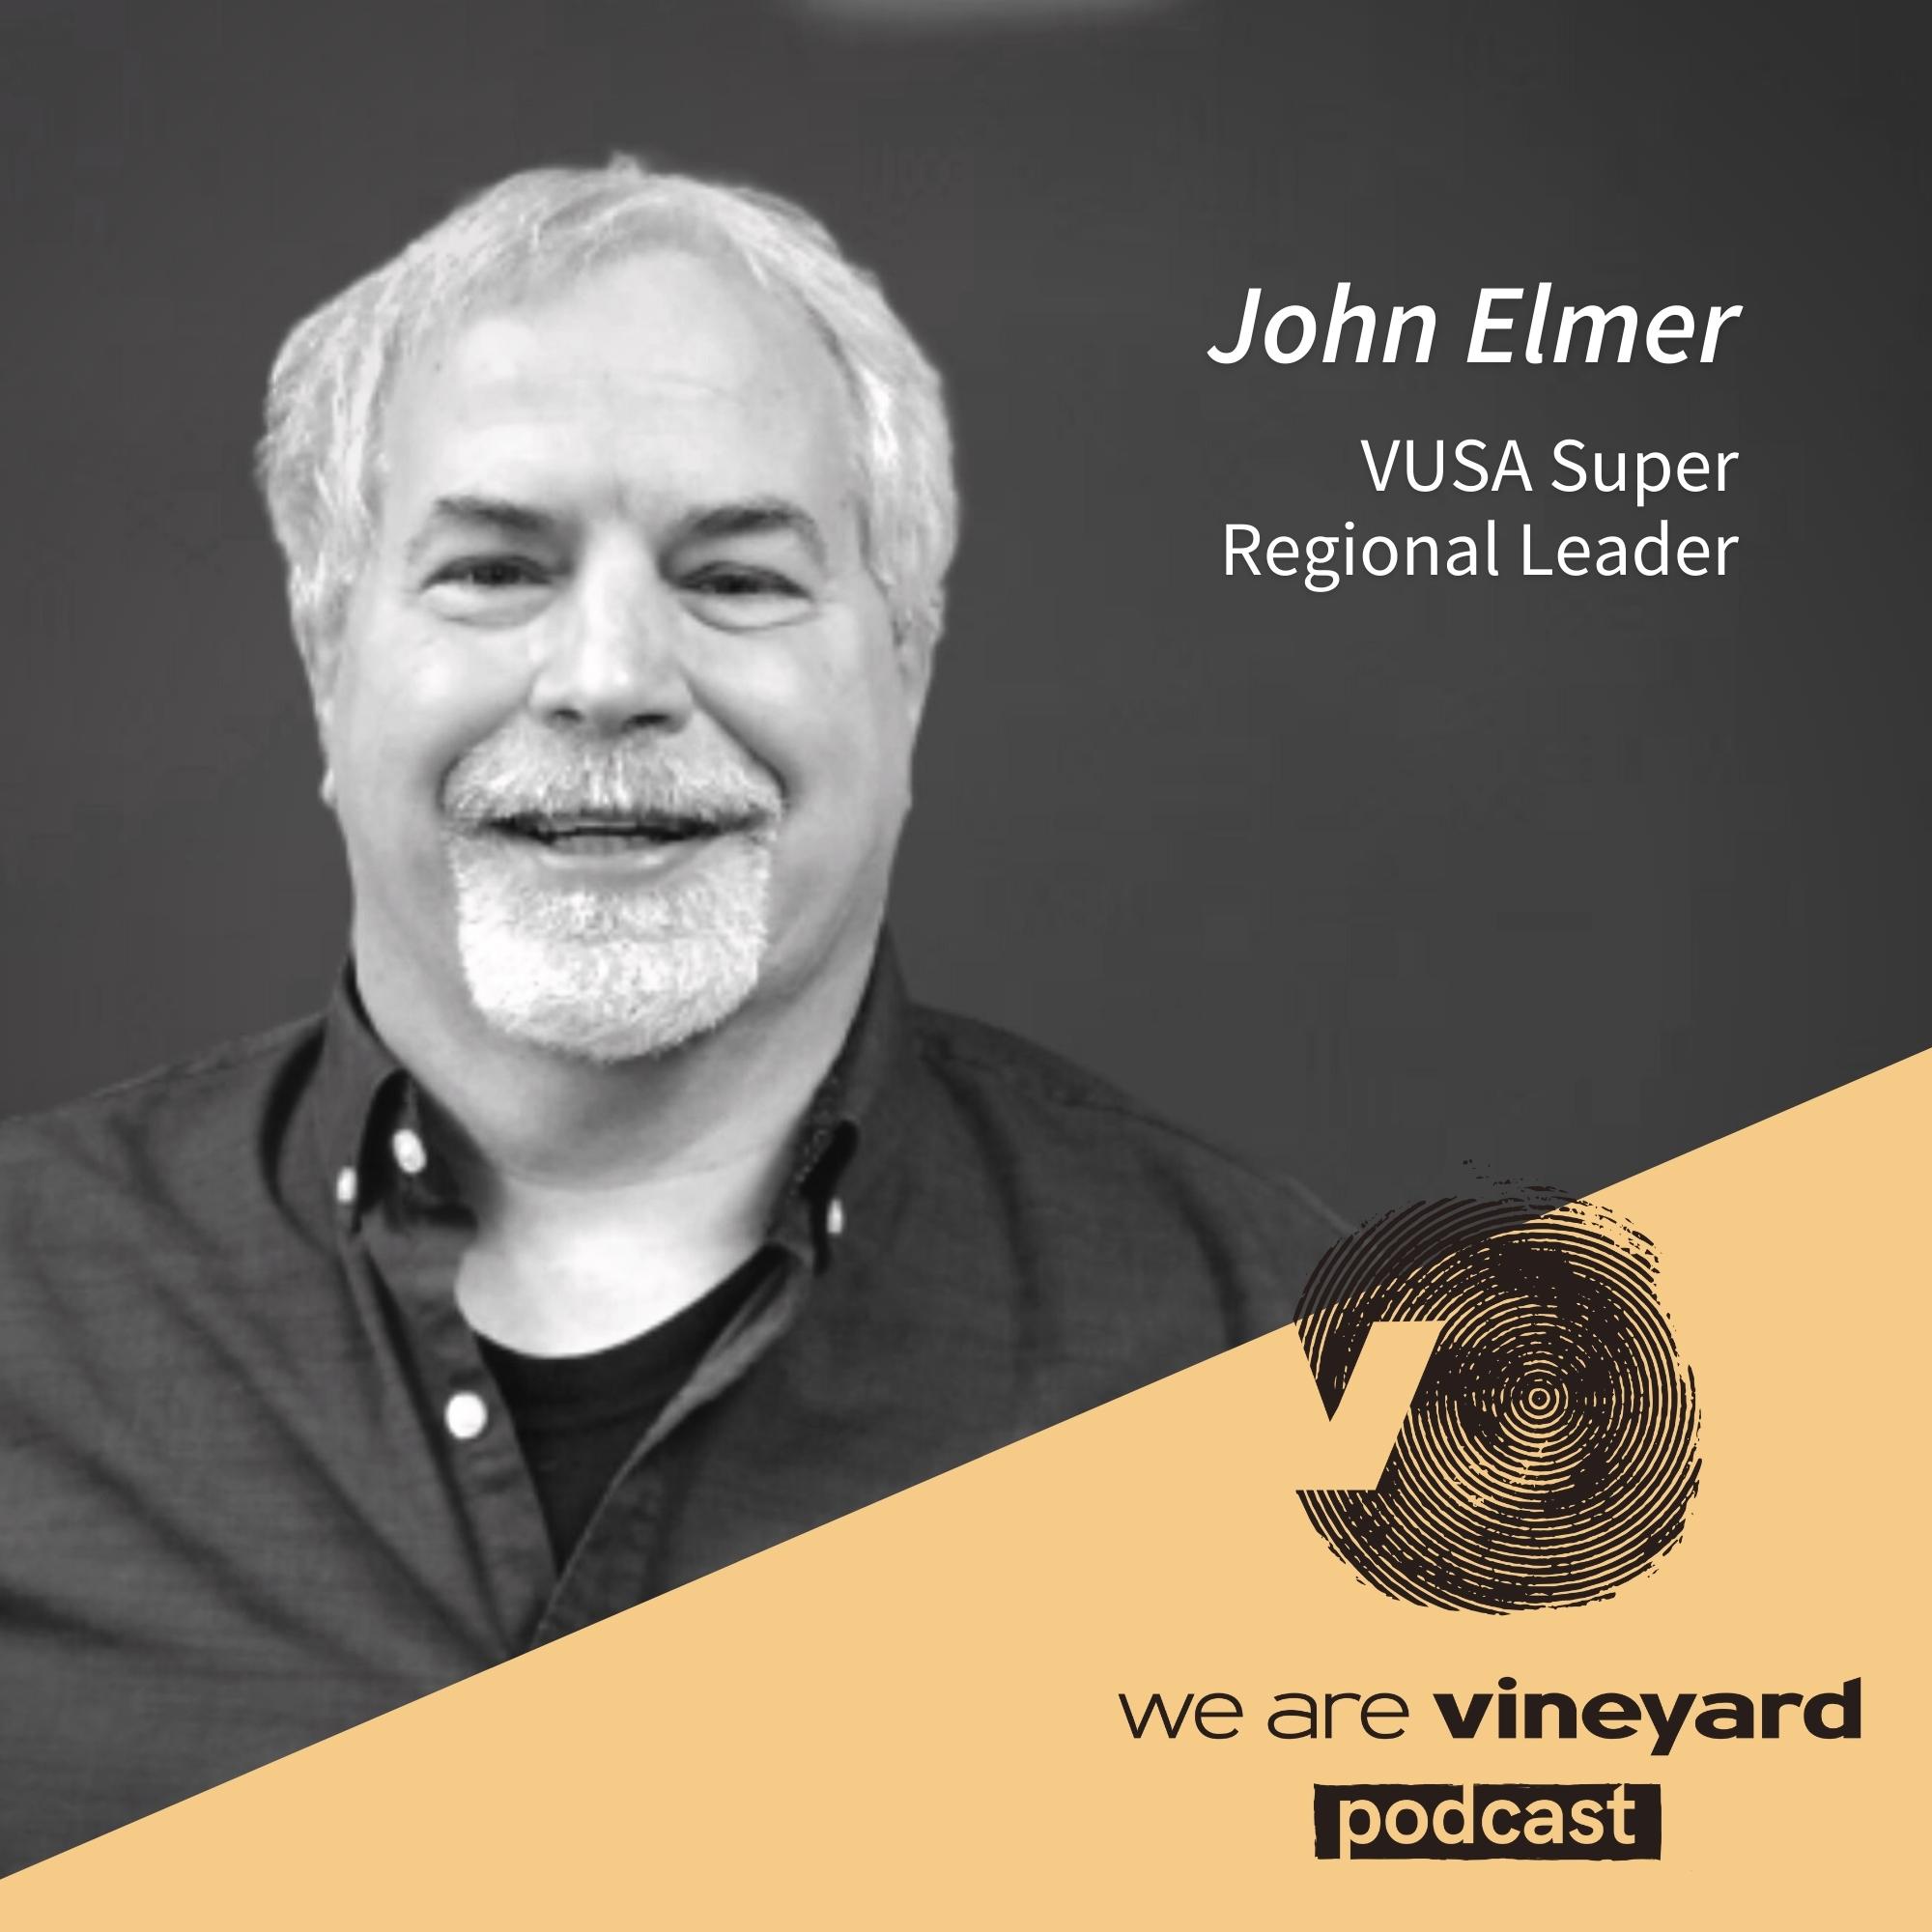 John Elmer: Moving Forward Together